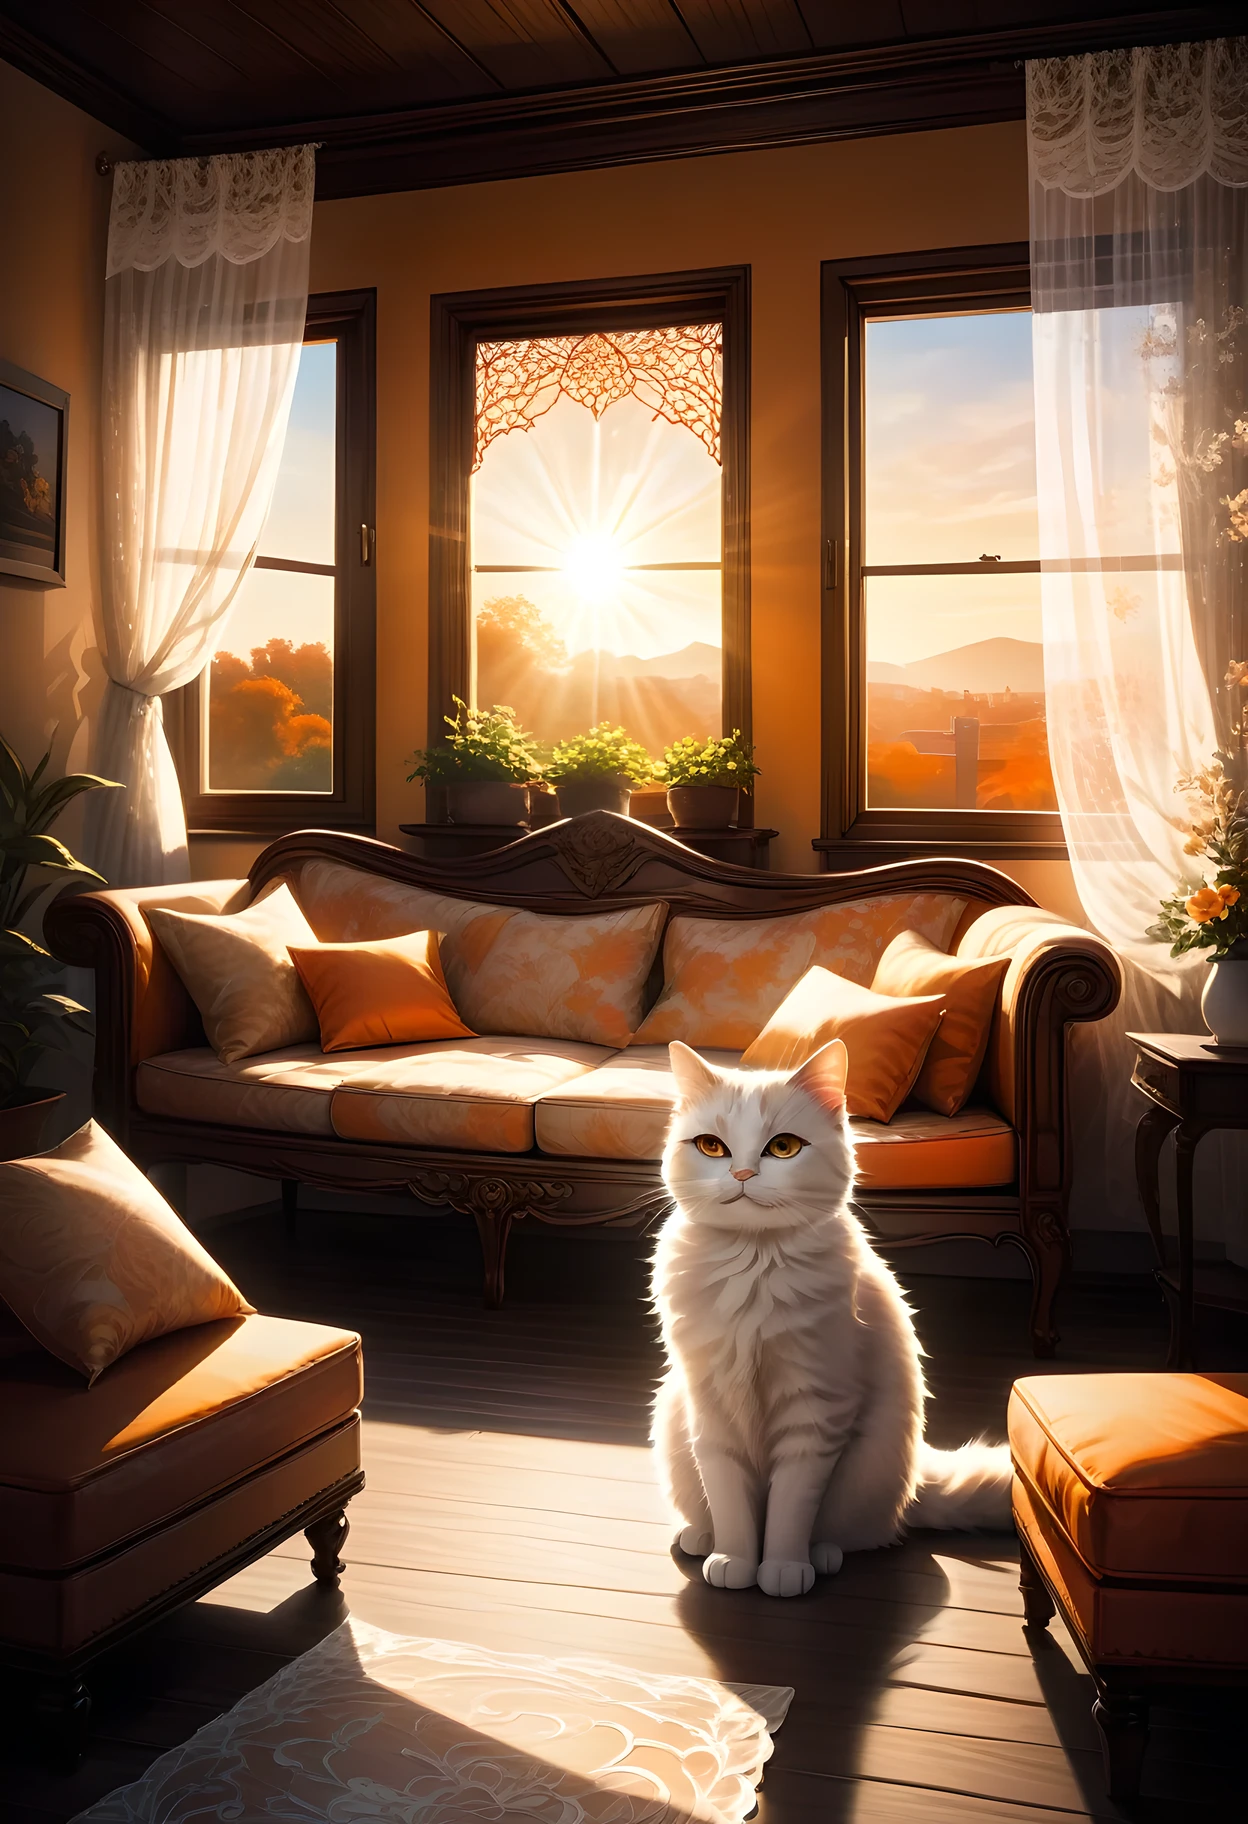 Деревянный каркас, открыть, окно с двойным остеклением, белые кружевные шторы с замысловатым рисунком развеваются на ветру, видно из комнаты:1.2, солнечный свет проникает в, подсветка кота на диване, Сумерки, оранжевое небо, Изящный.